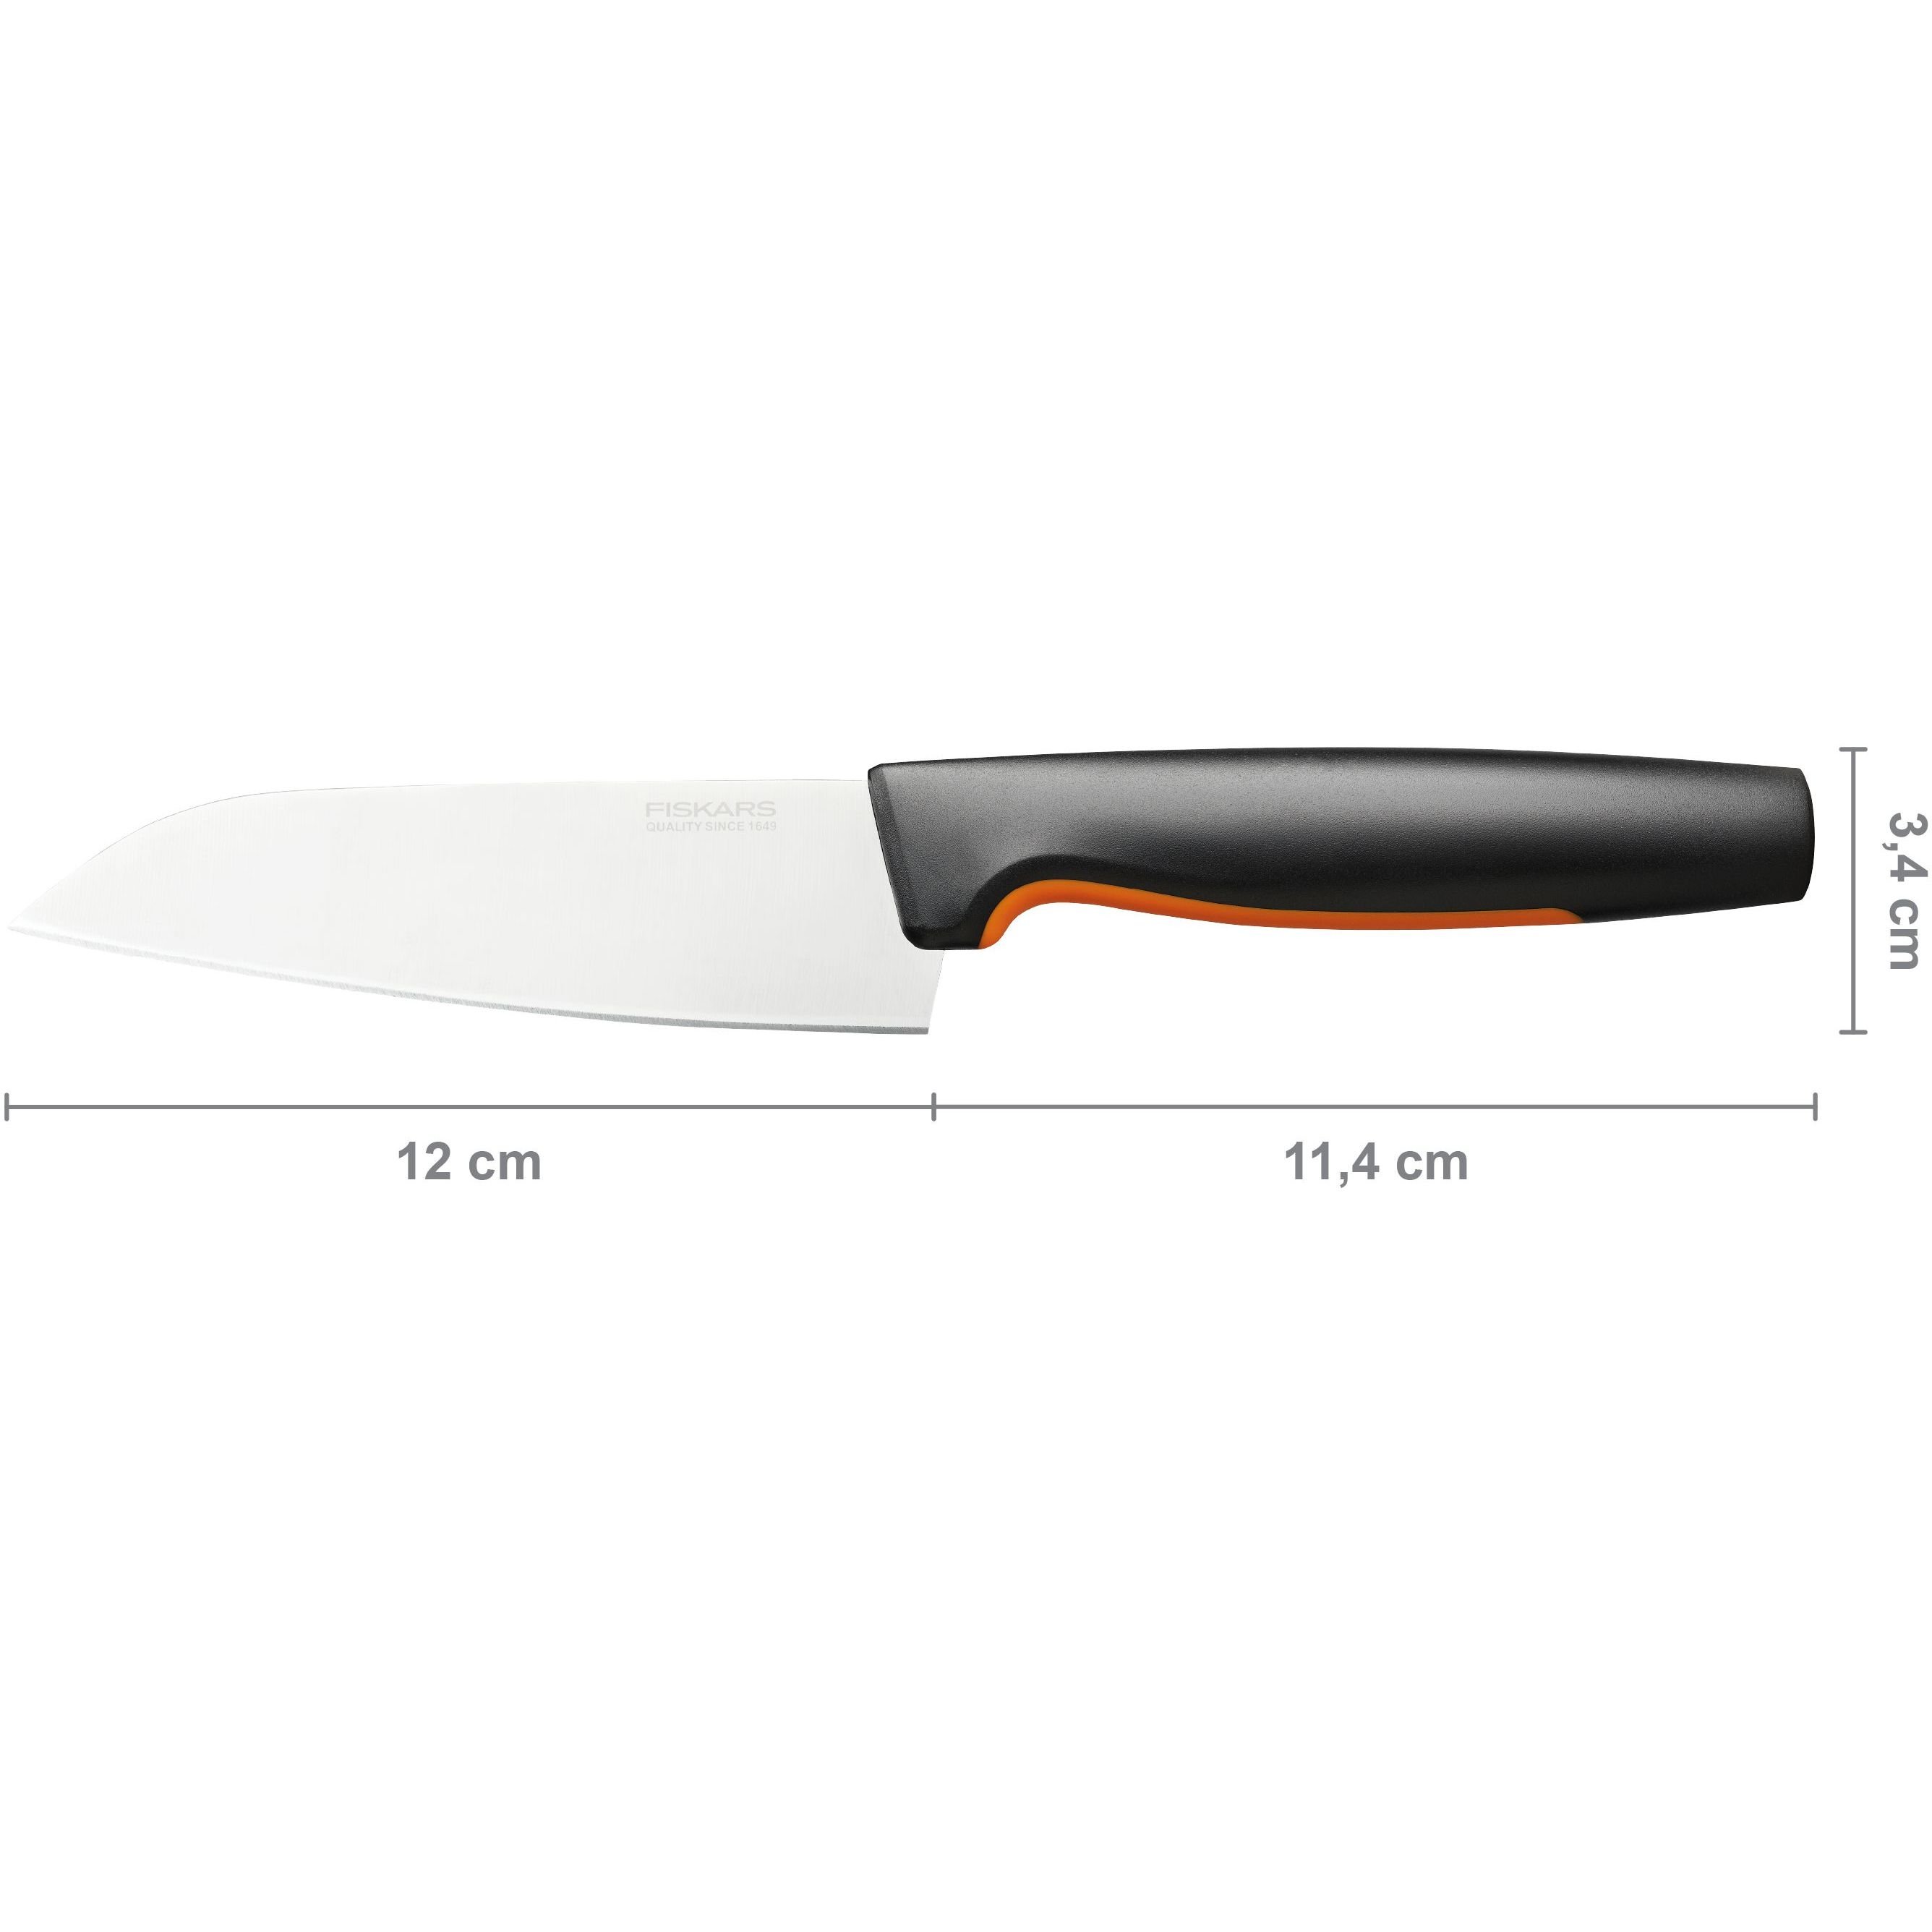 Нож для шеф-повара малый Fiskars FF, 12 см (1057541) - фото 2